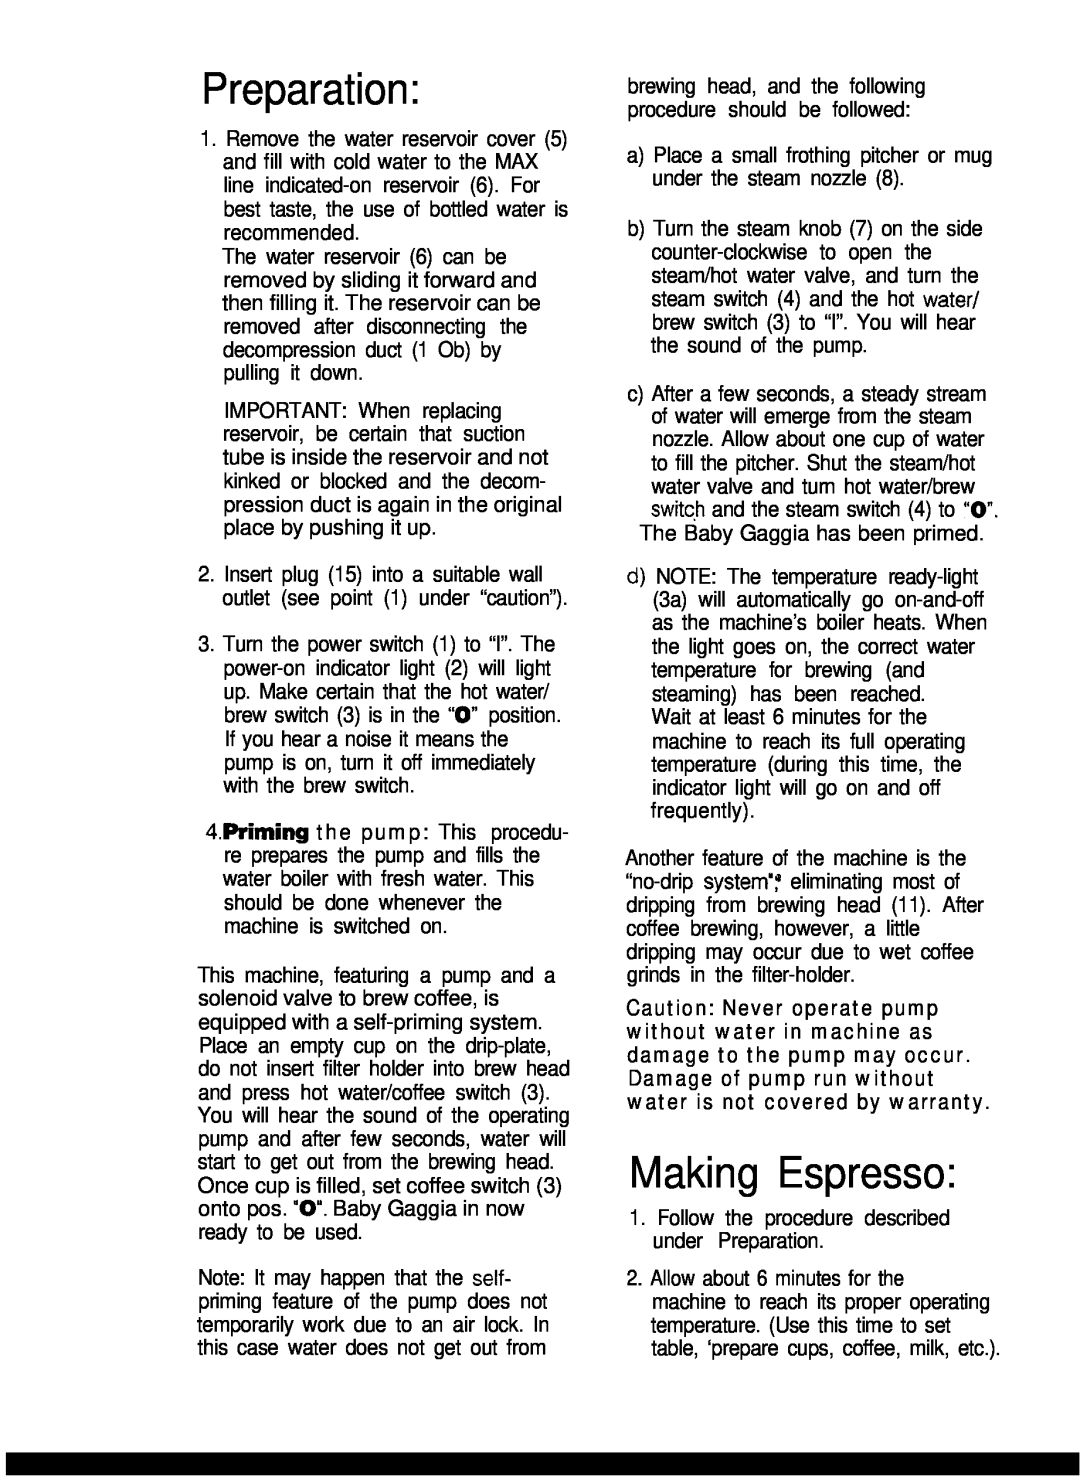 Gaggia Expresso/Cappuccino Makers manual Preparation, Making Espresso 